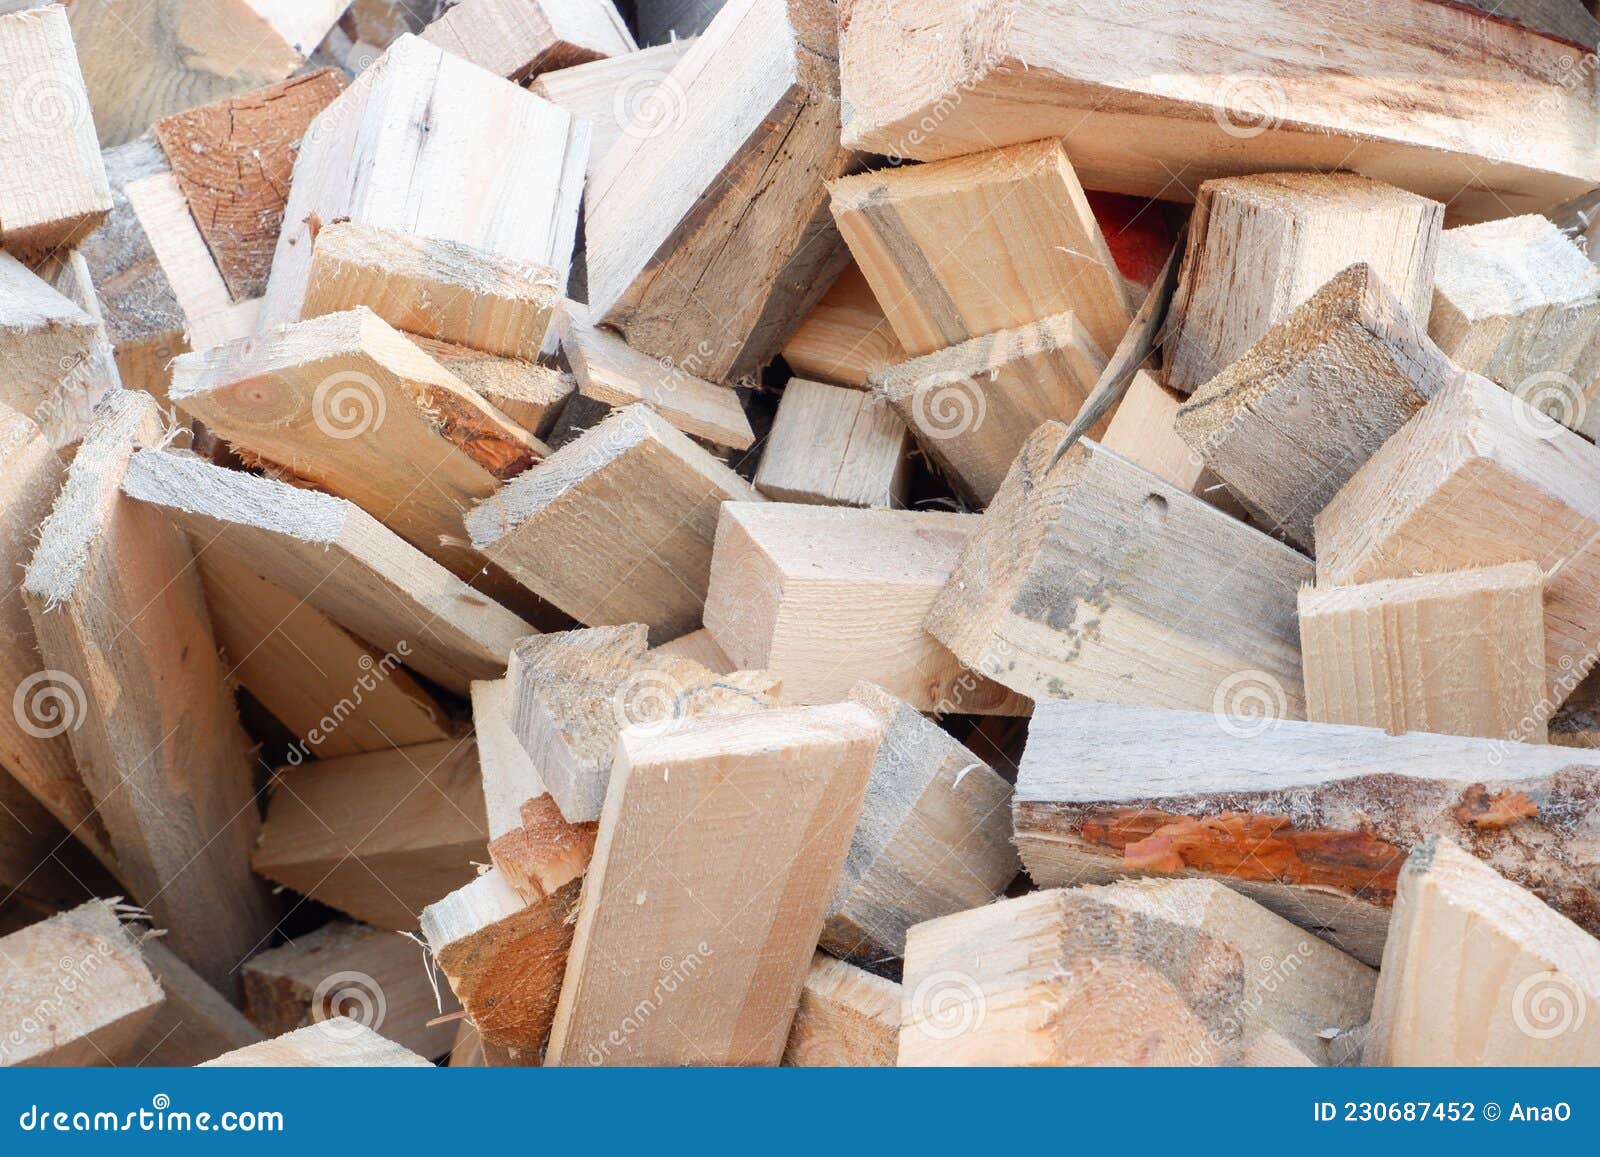 отходы производства древесины. дрова. пиломатериалы, срезанные идеально,  как задний план. фон древесного топлива Стоковое Фото - изображение  насчитывающей жара, швырок: 230687452